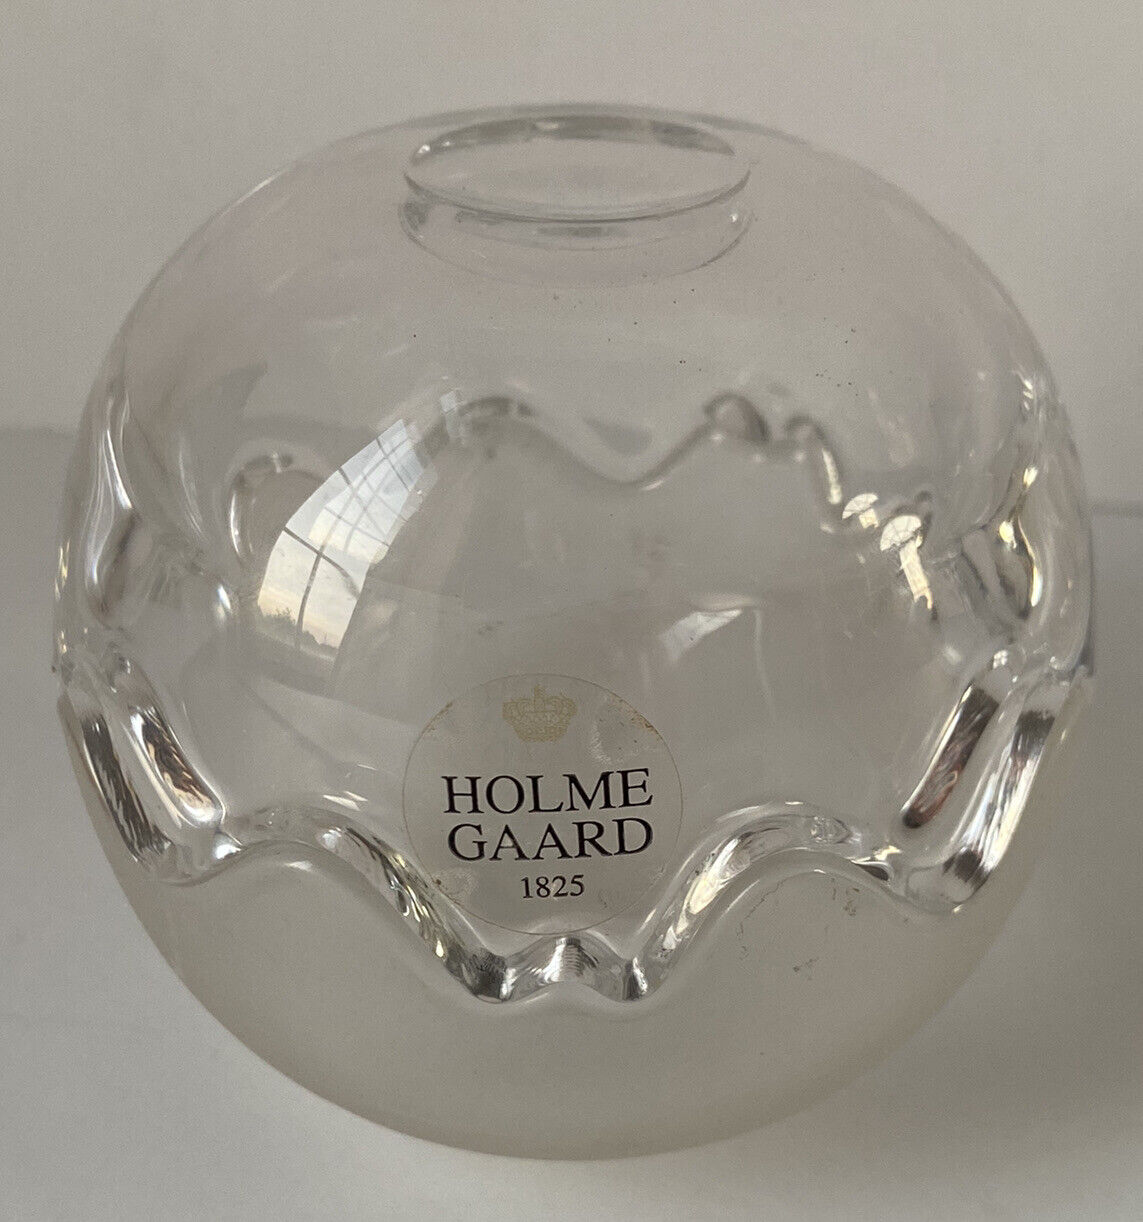 Holmegaard 1825 glass Holder made in Denmark